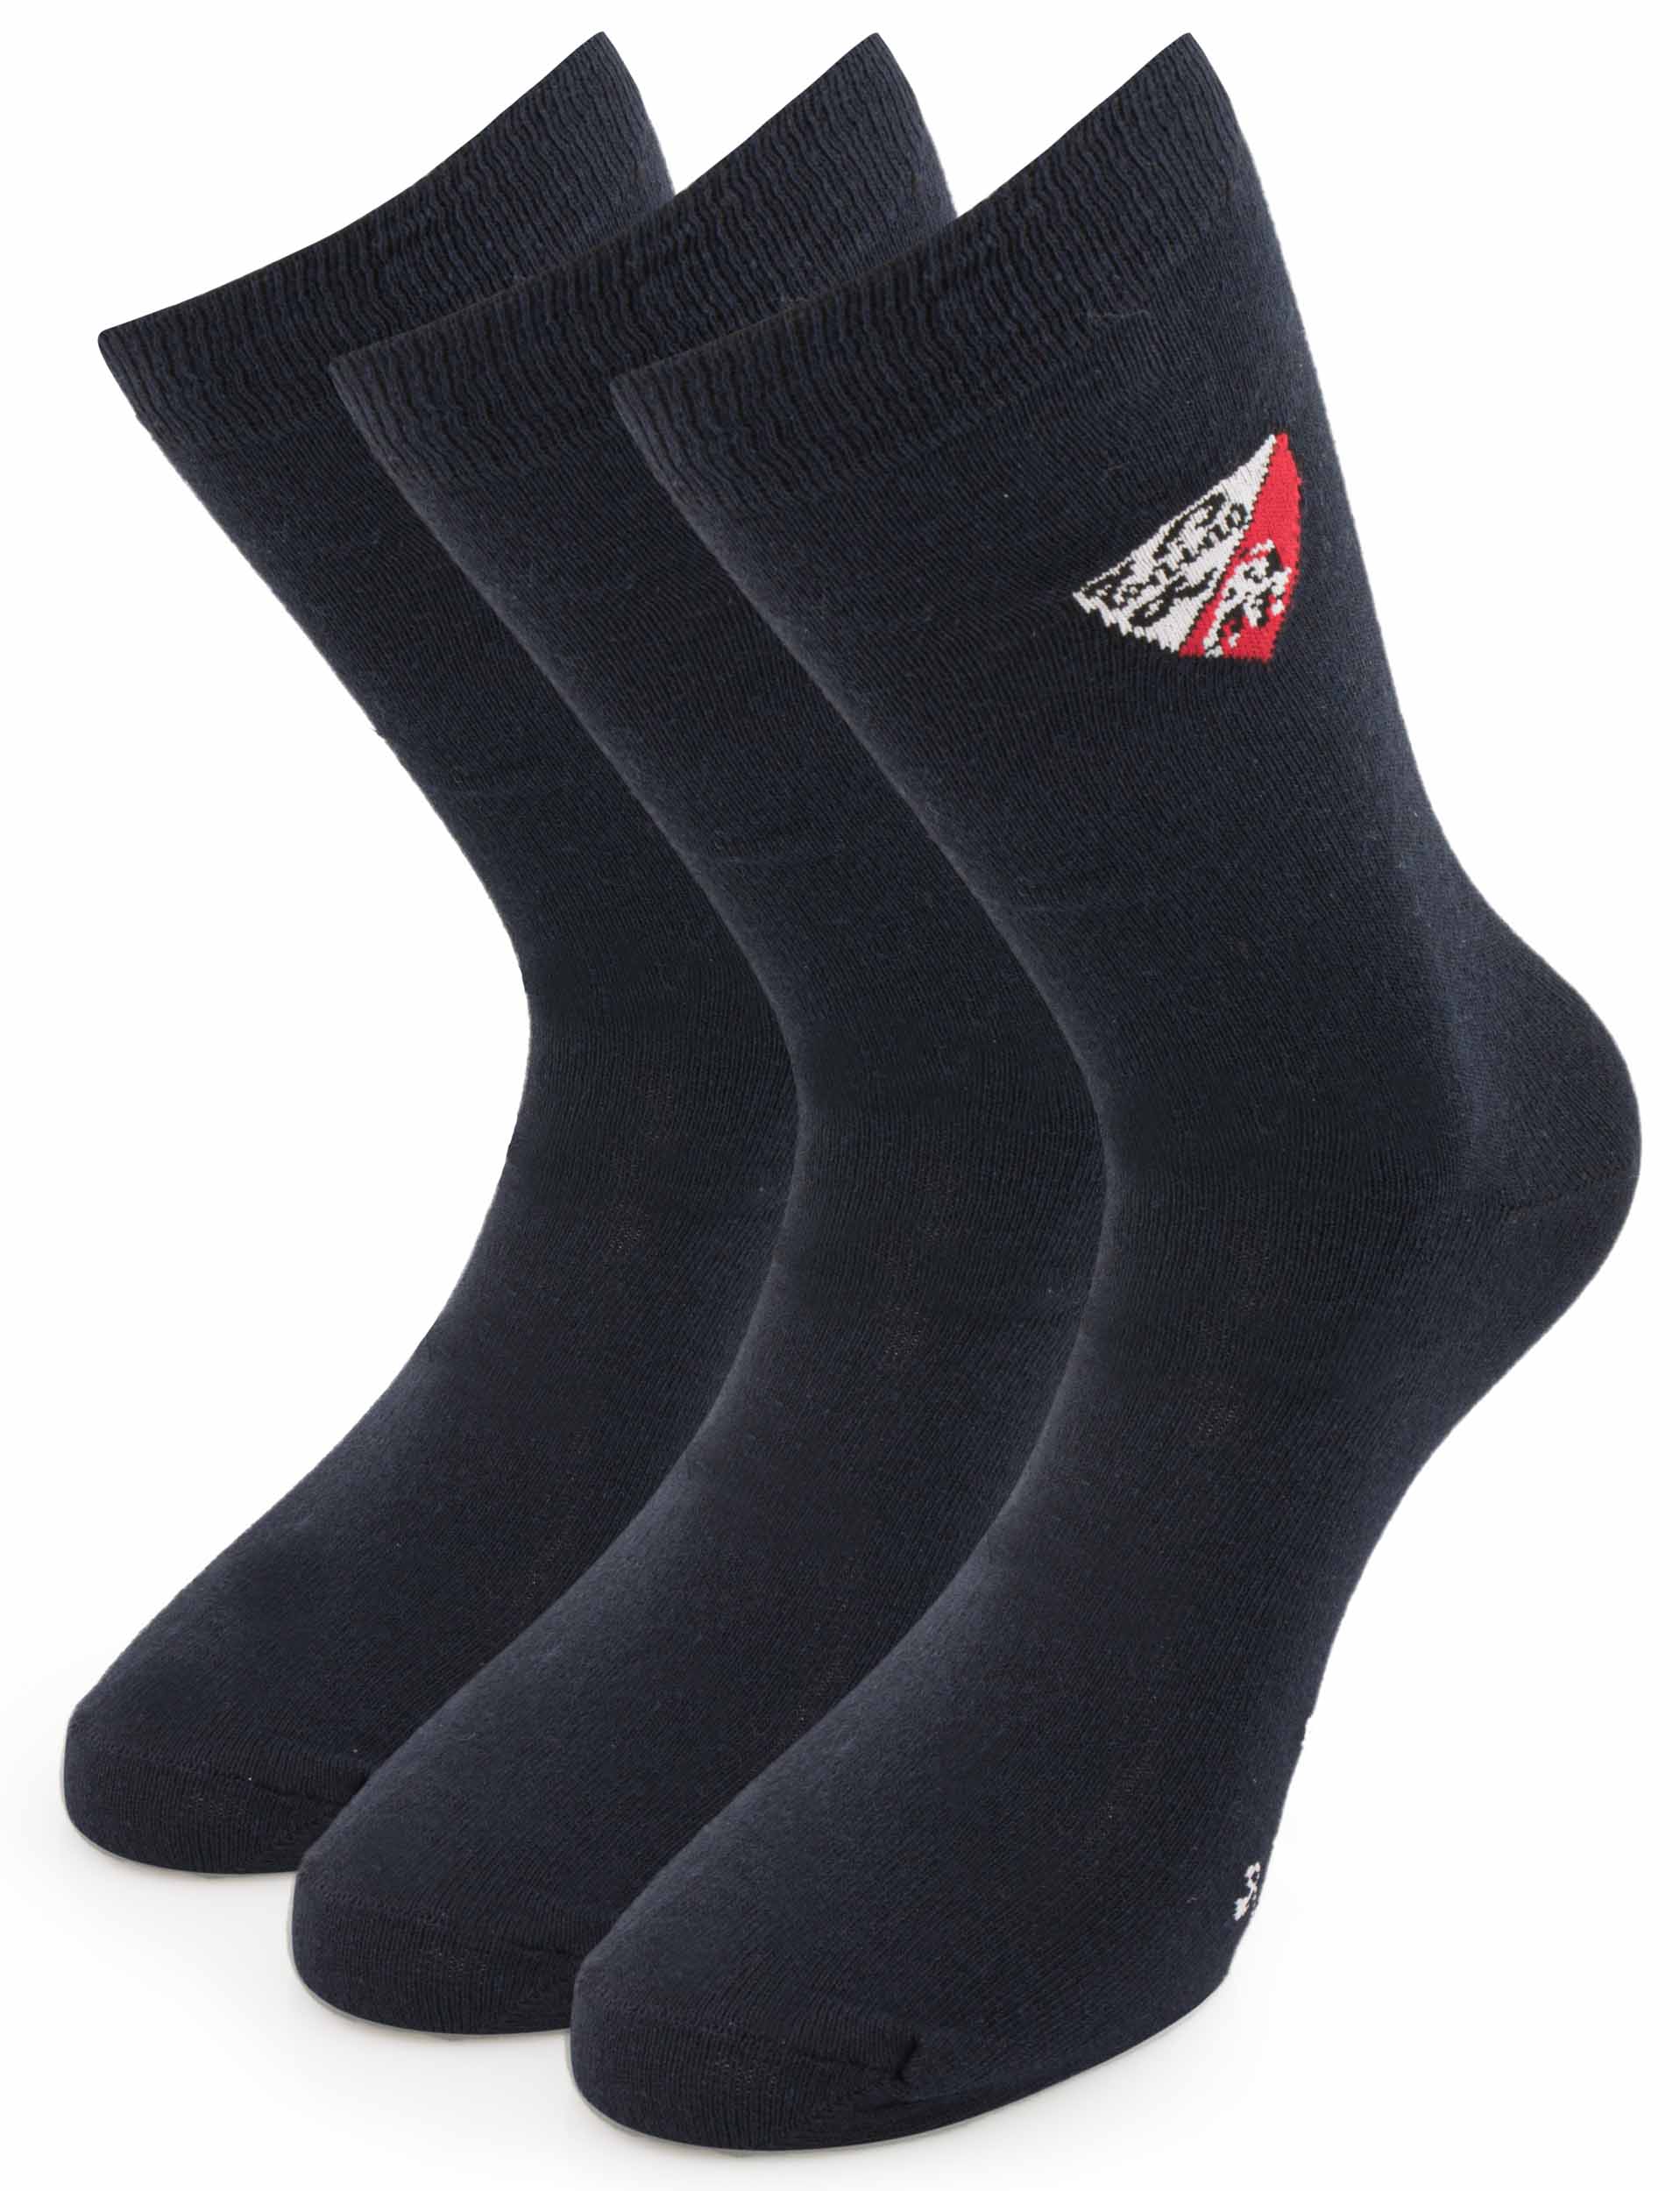 Ponožky Tonino Lamborghini modré 3 páry|43-46